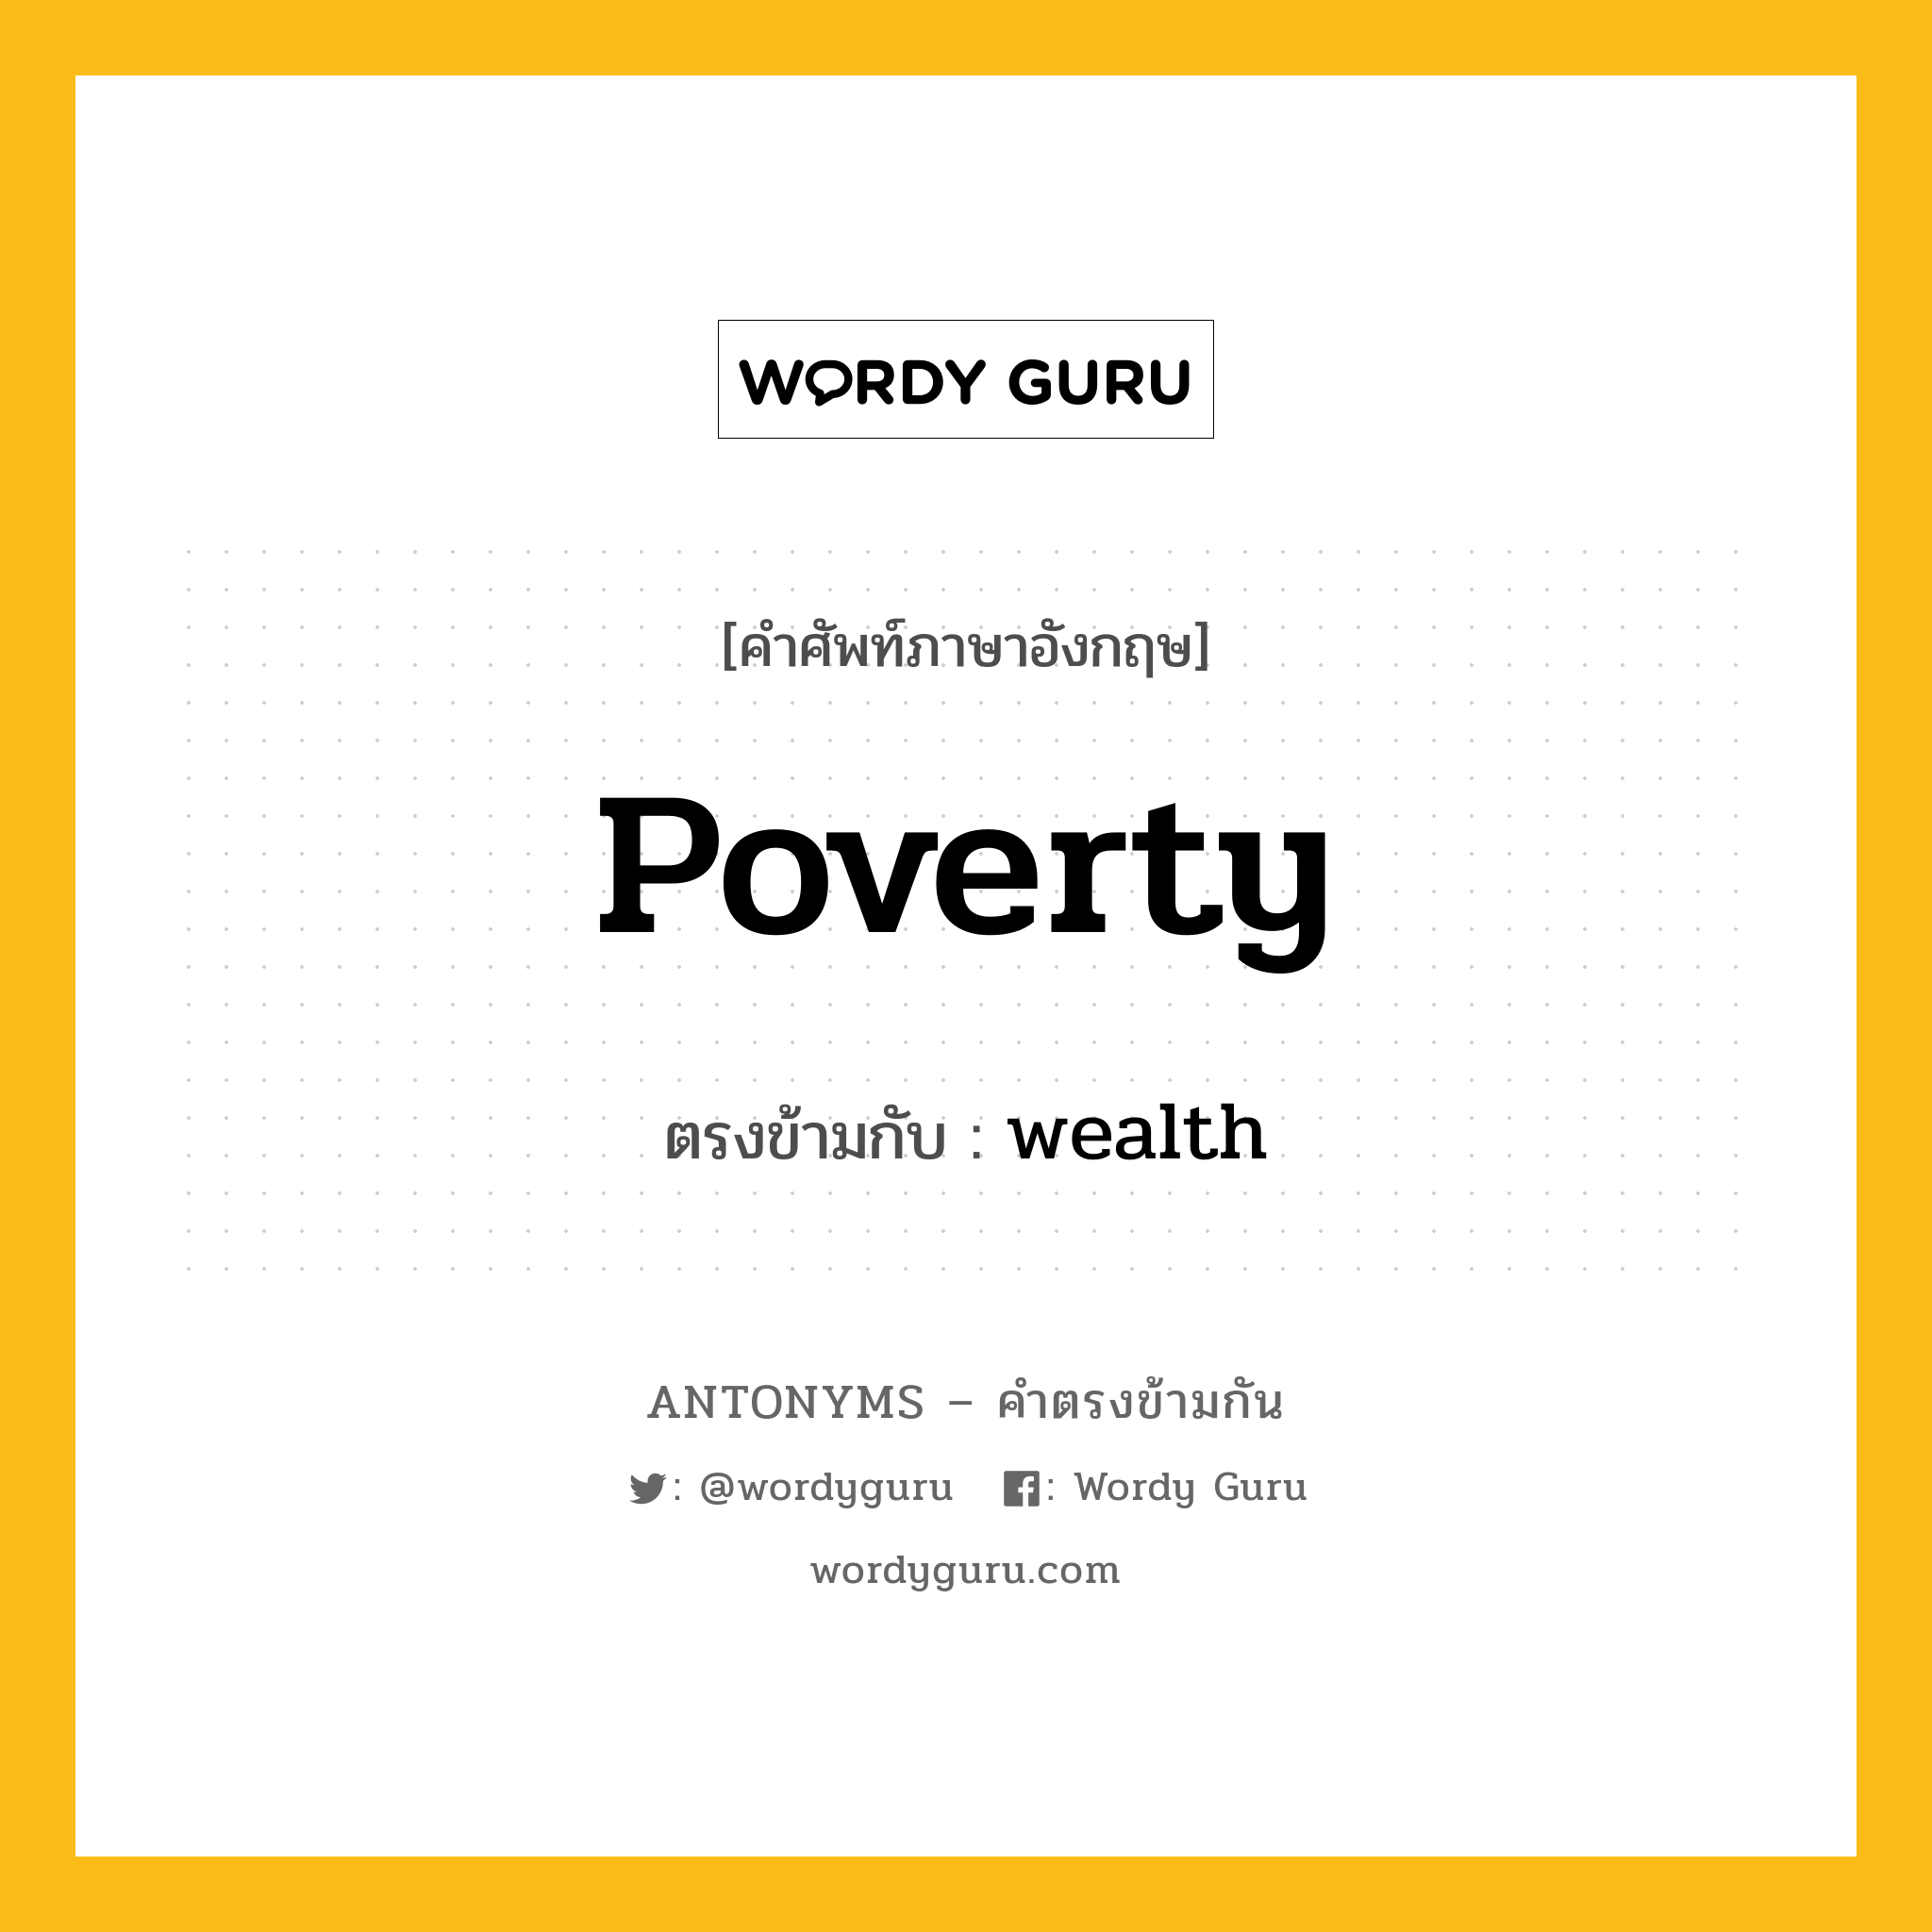 poverty เป็นคำตรงข้ามกับคำไหนบ้าง?, คำศัพท์ภาษาอังกฤษ poverty ตรงข้ามกับ wealth หมวด wealth